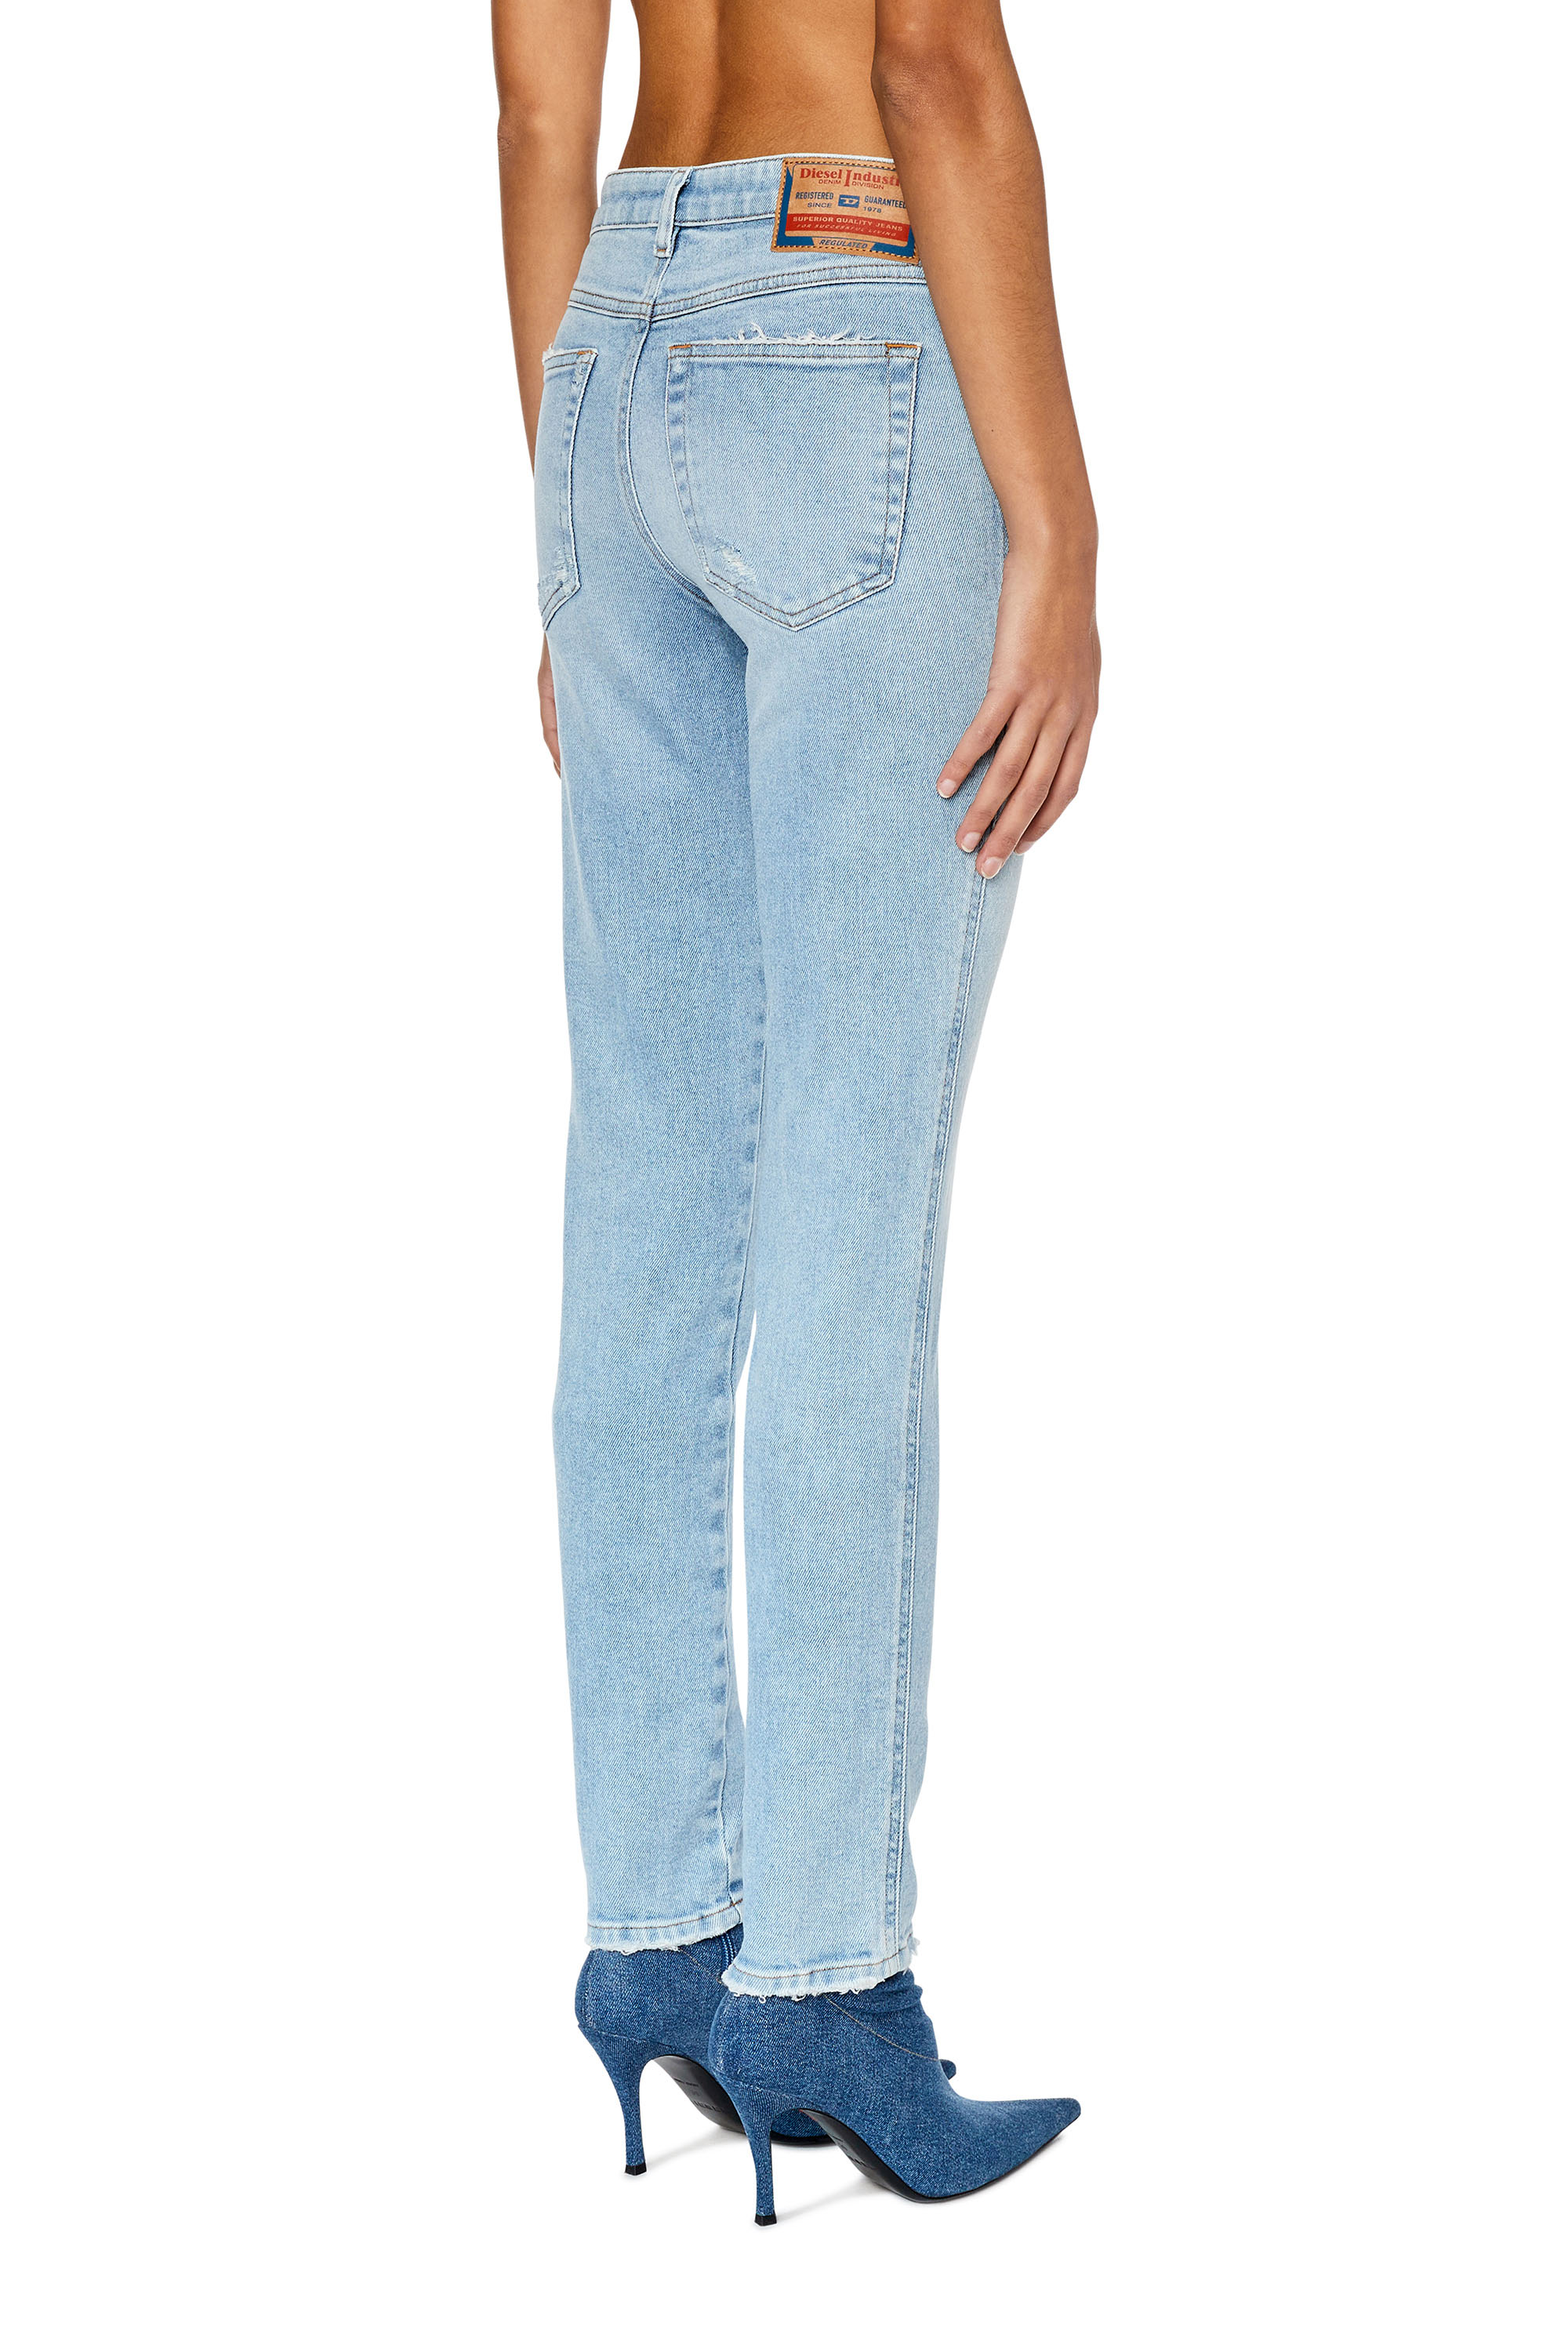 Diesel - Skinny Jeans 2015 Babhila 09E90,  - Image 4